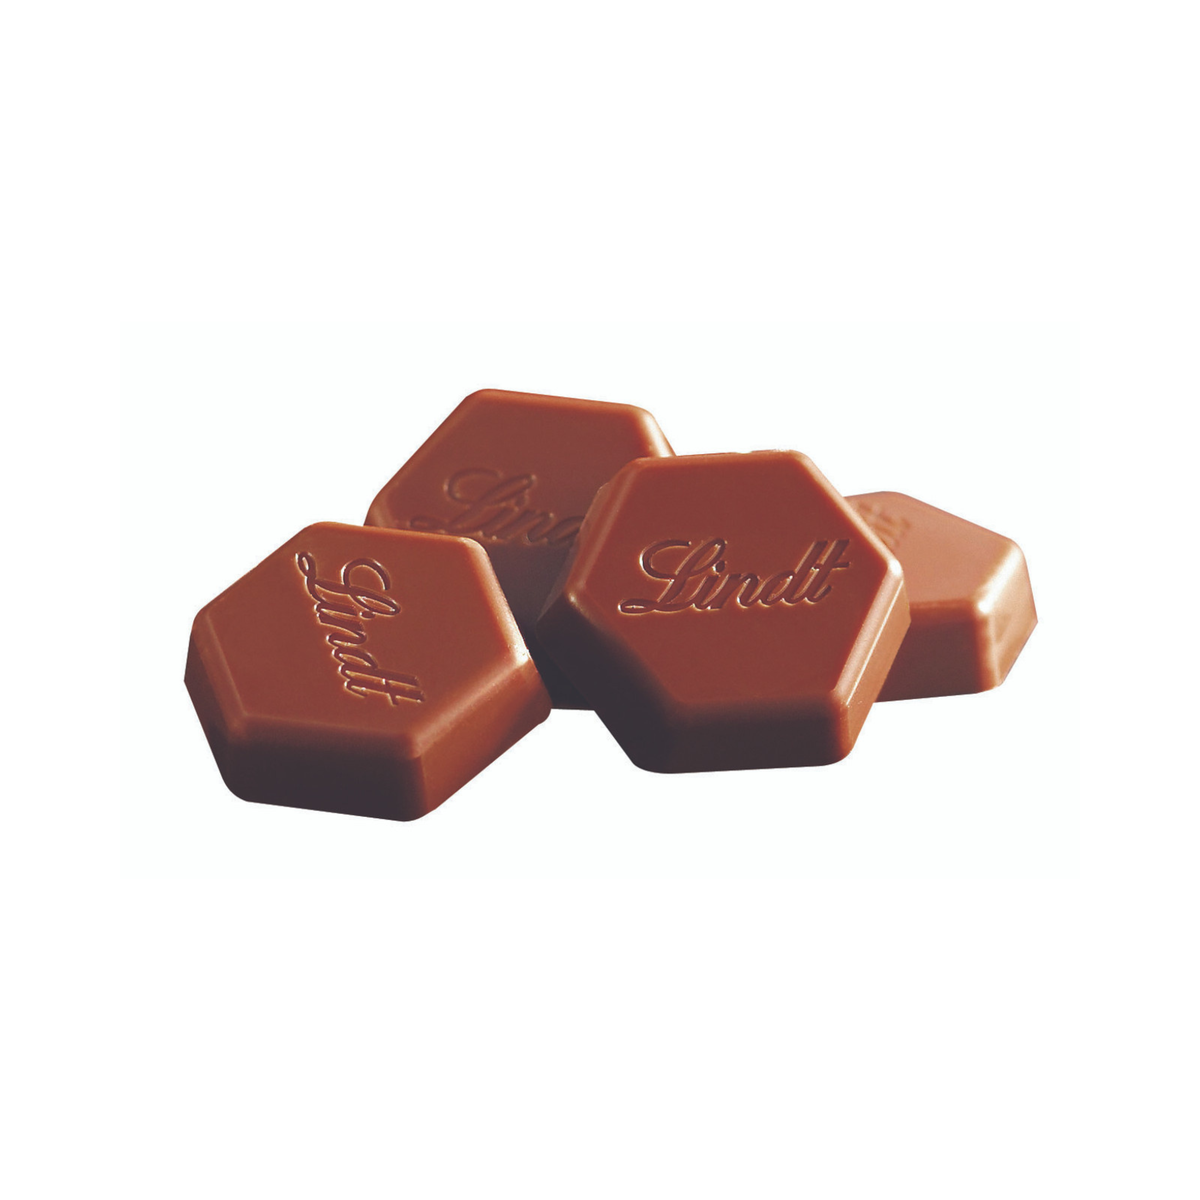 Lindt - Chocolat au Lait de couverture (500gr) 